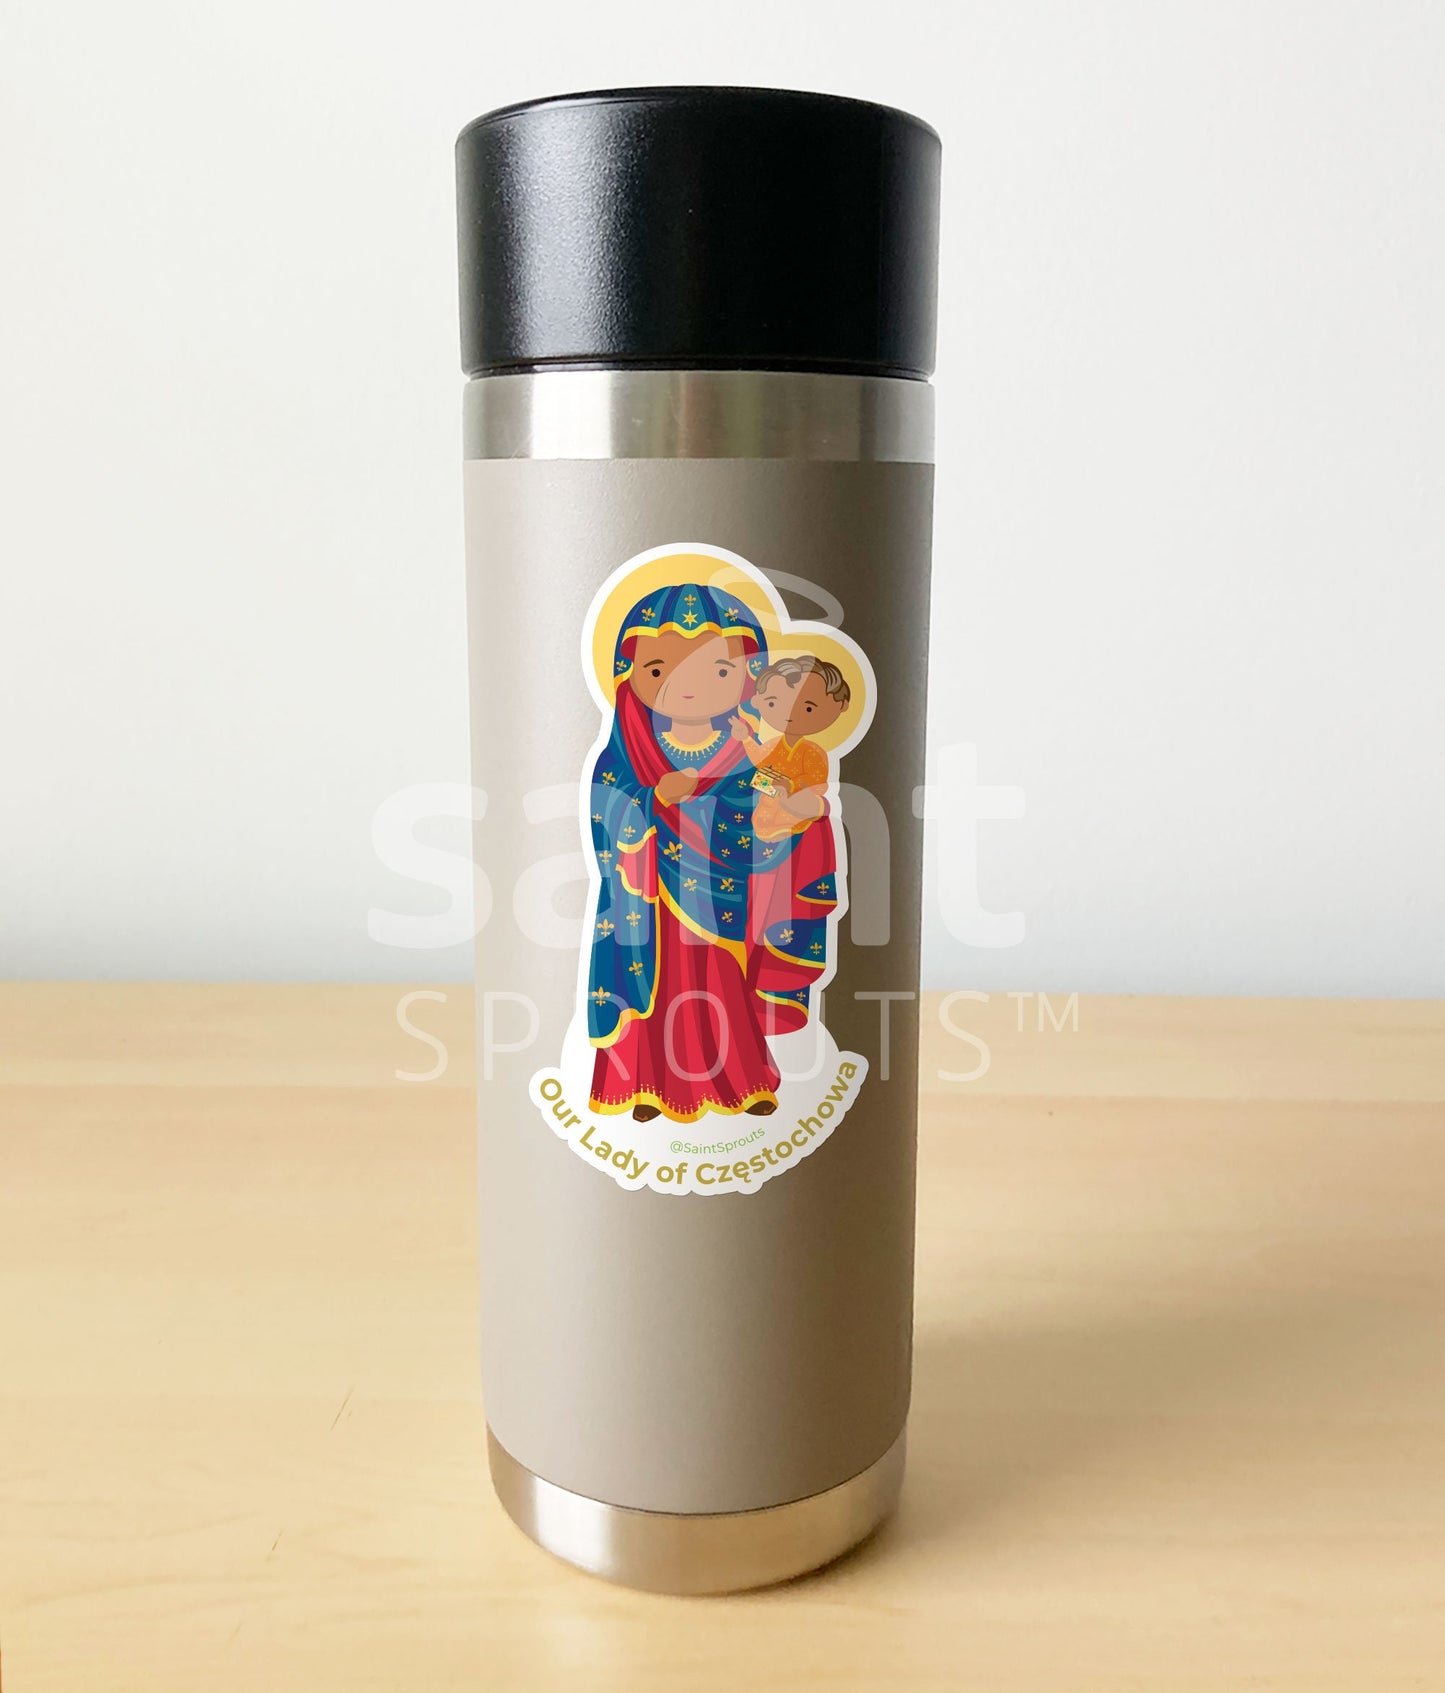 Our Lady of Czestochowa Sticker / Black Madonna Sticker